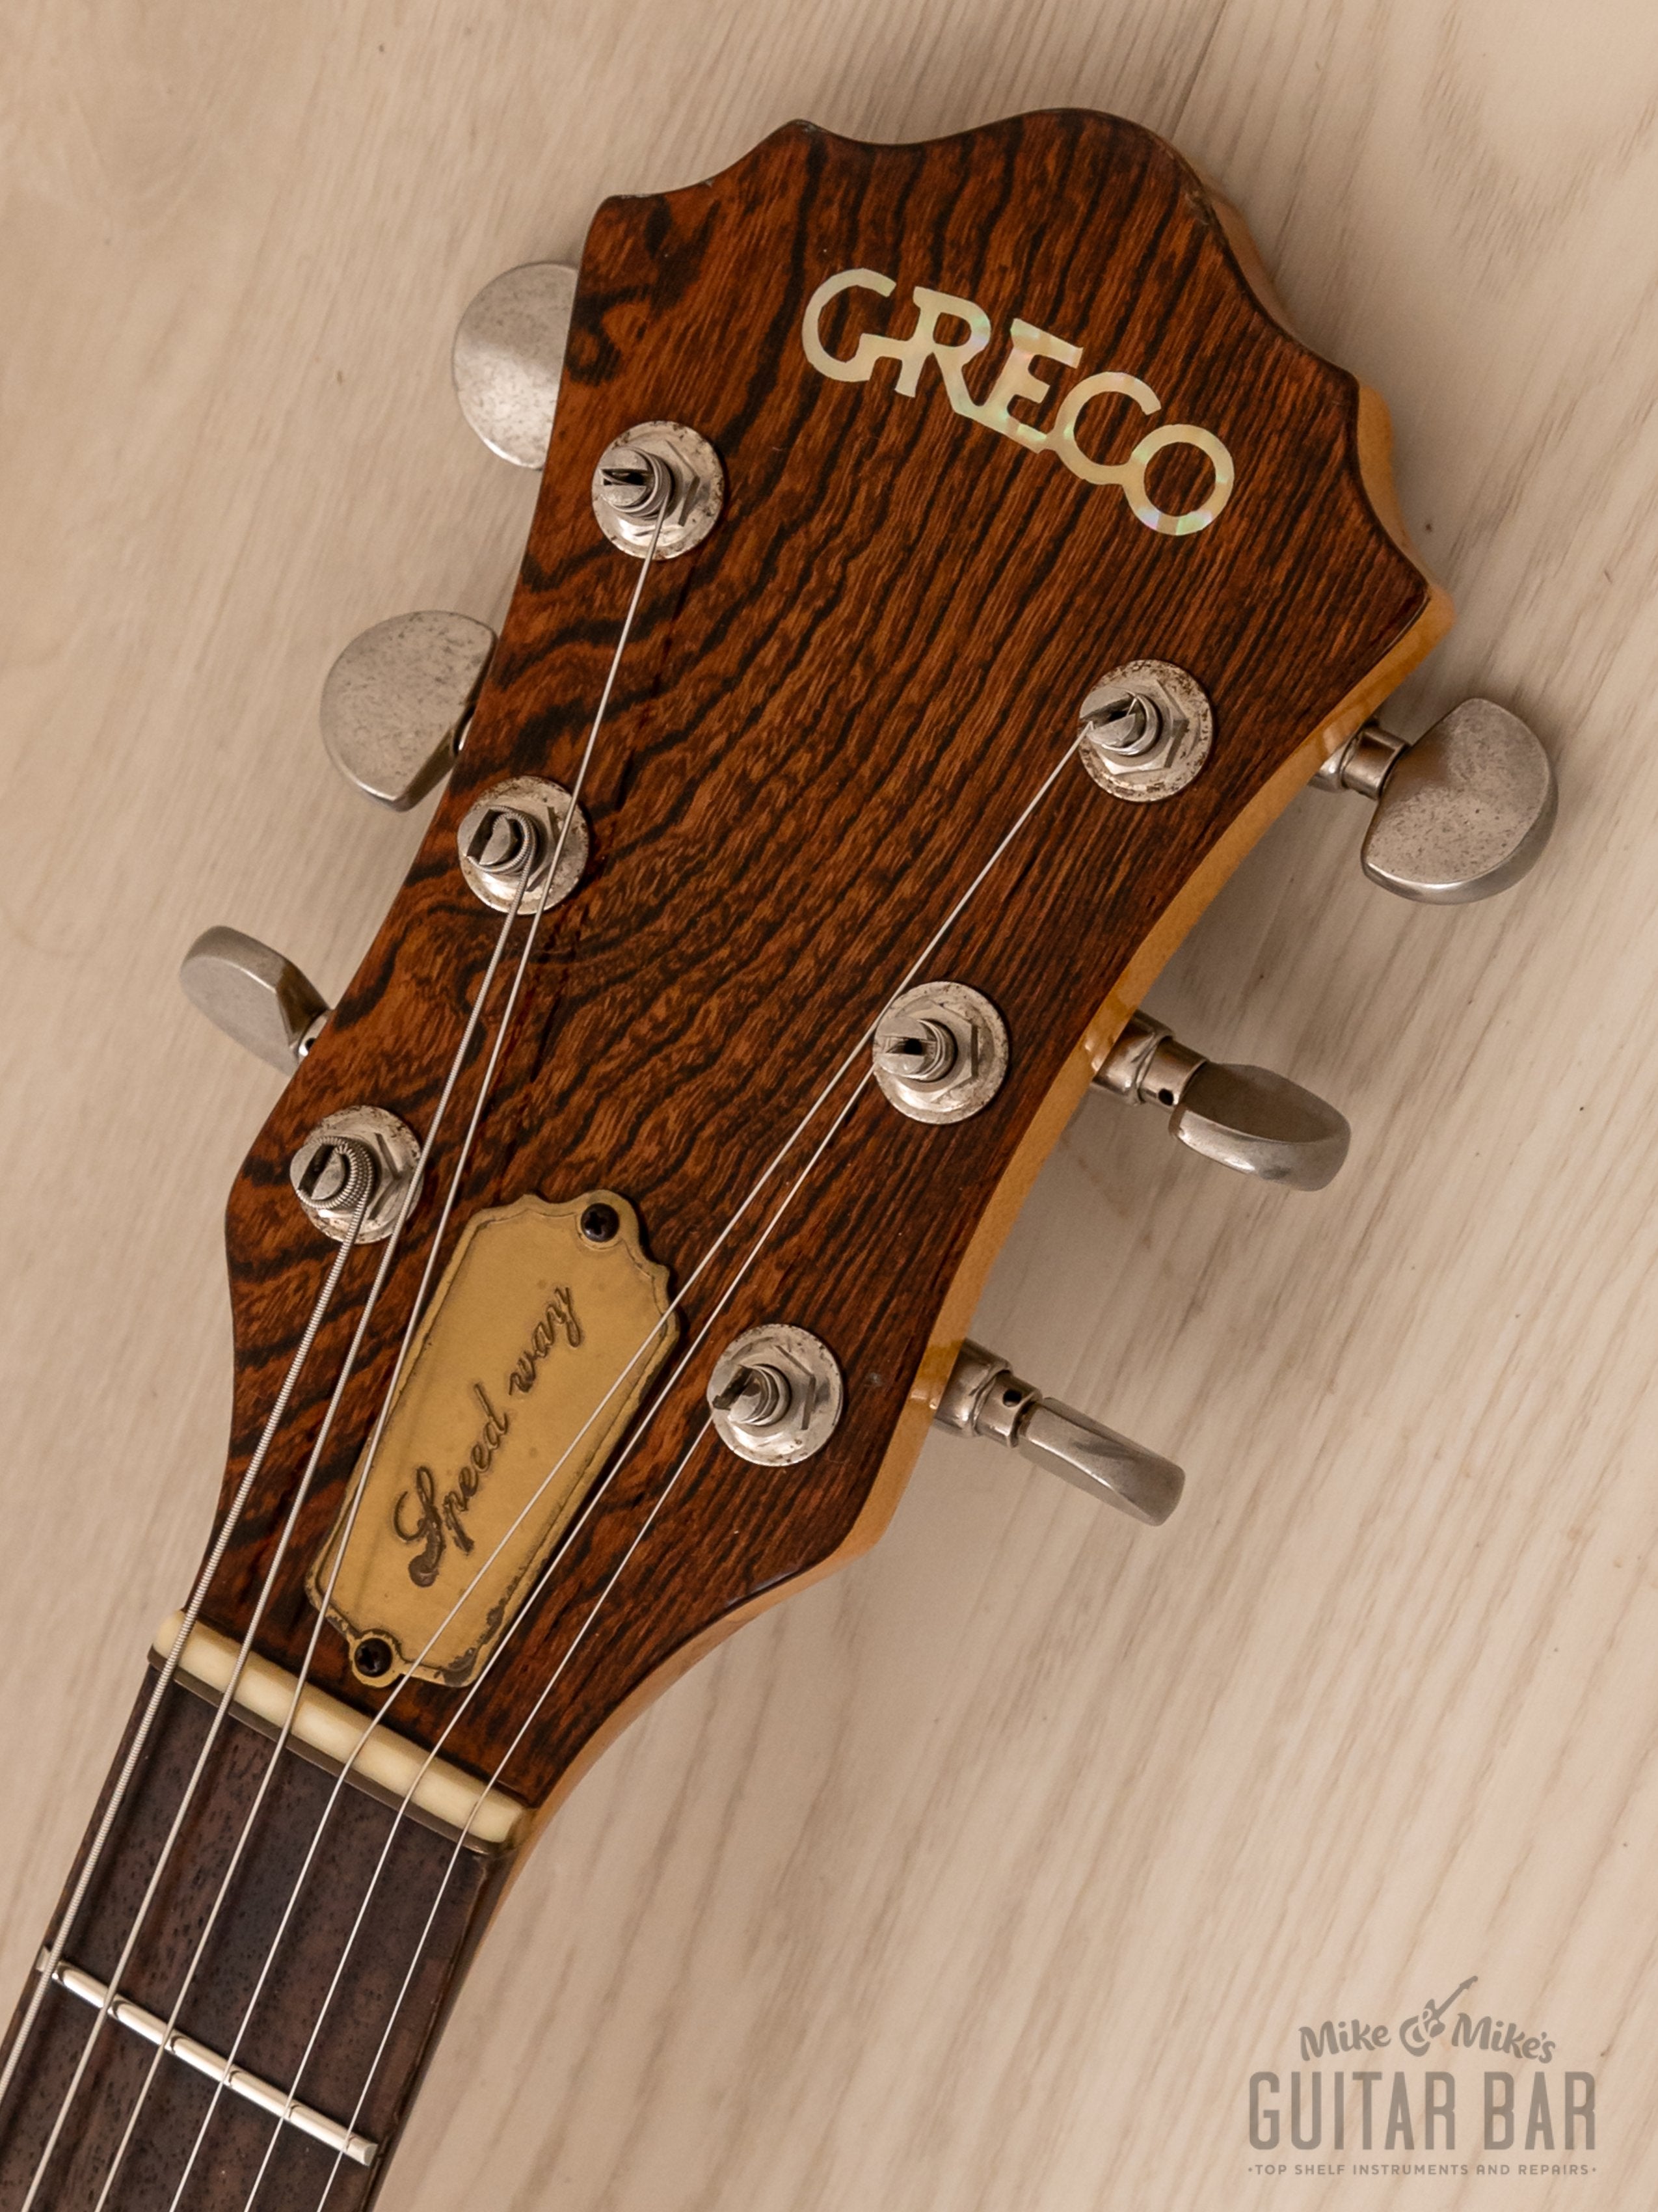 1979 Greco GO700 Speed Way Vintage Neck Through Guitar Dark Stain, Japan Fujigen